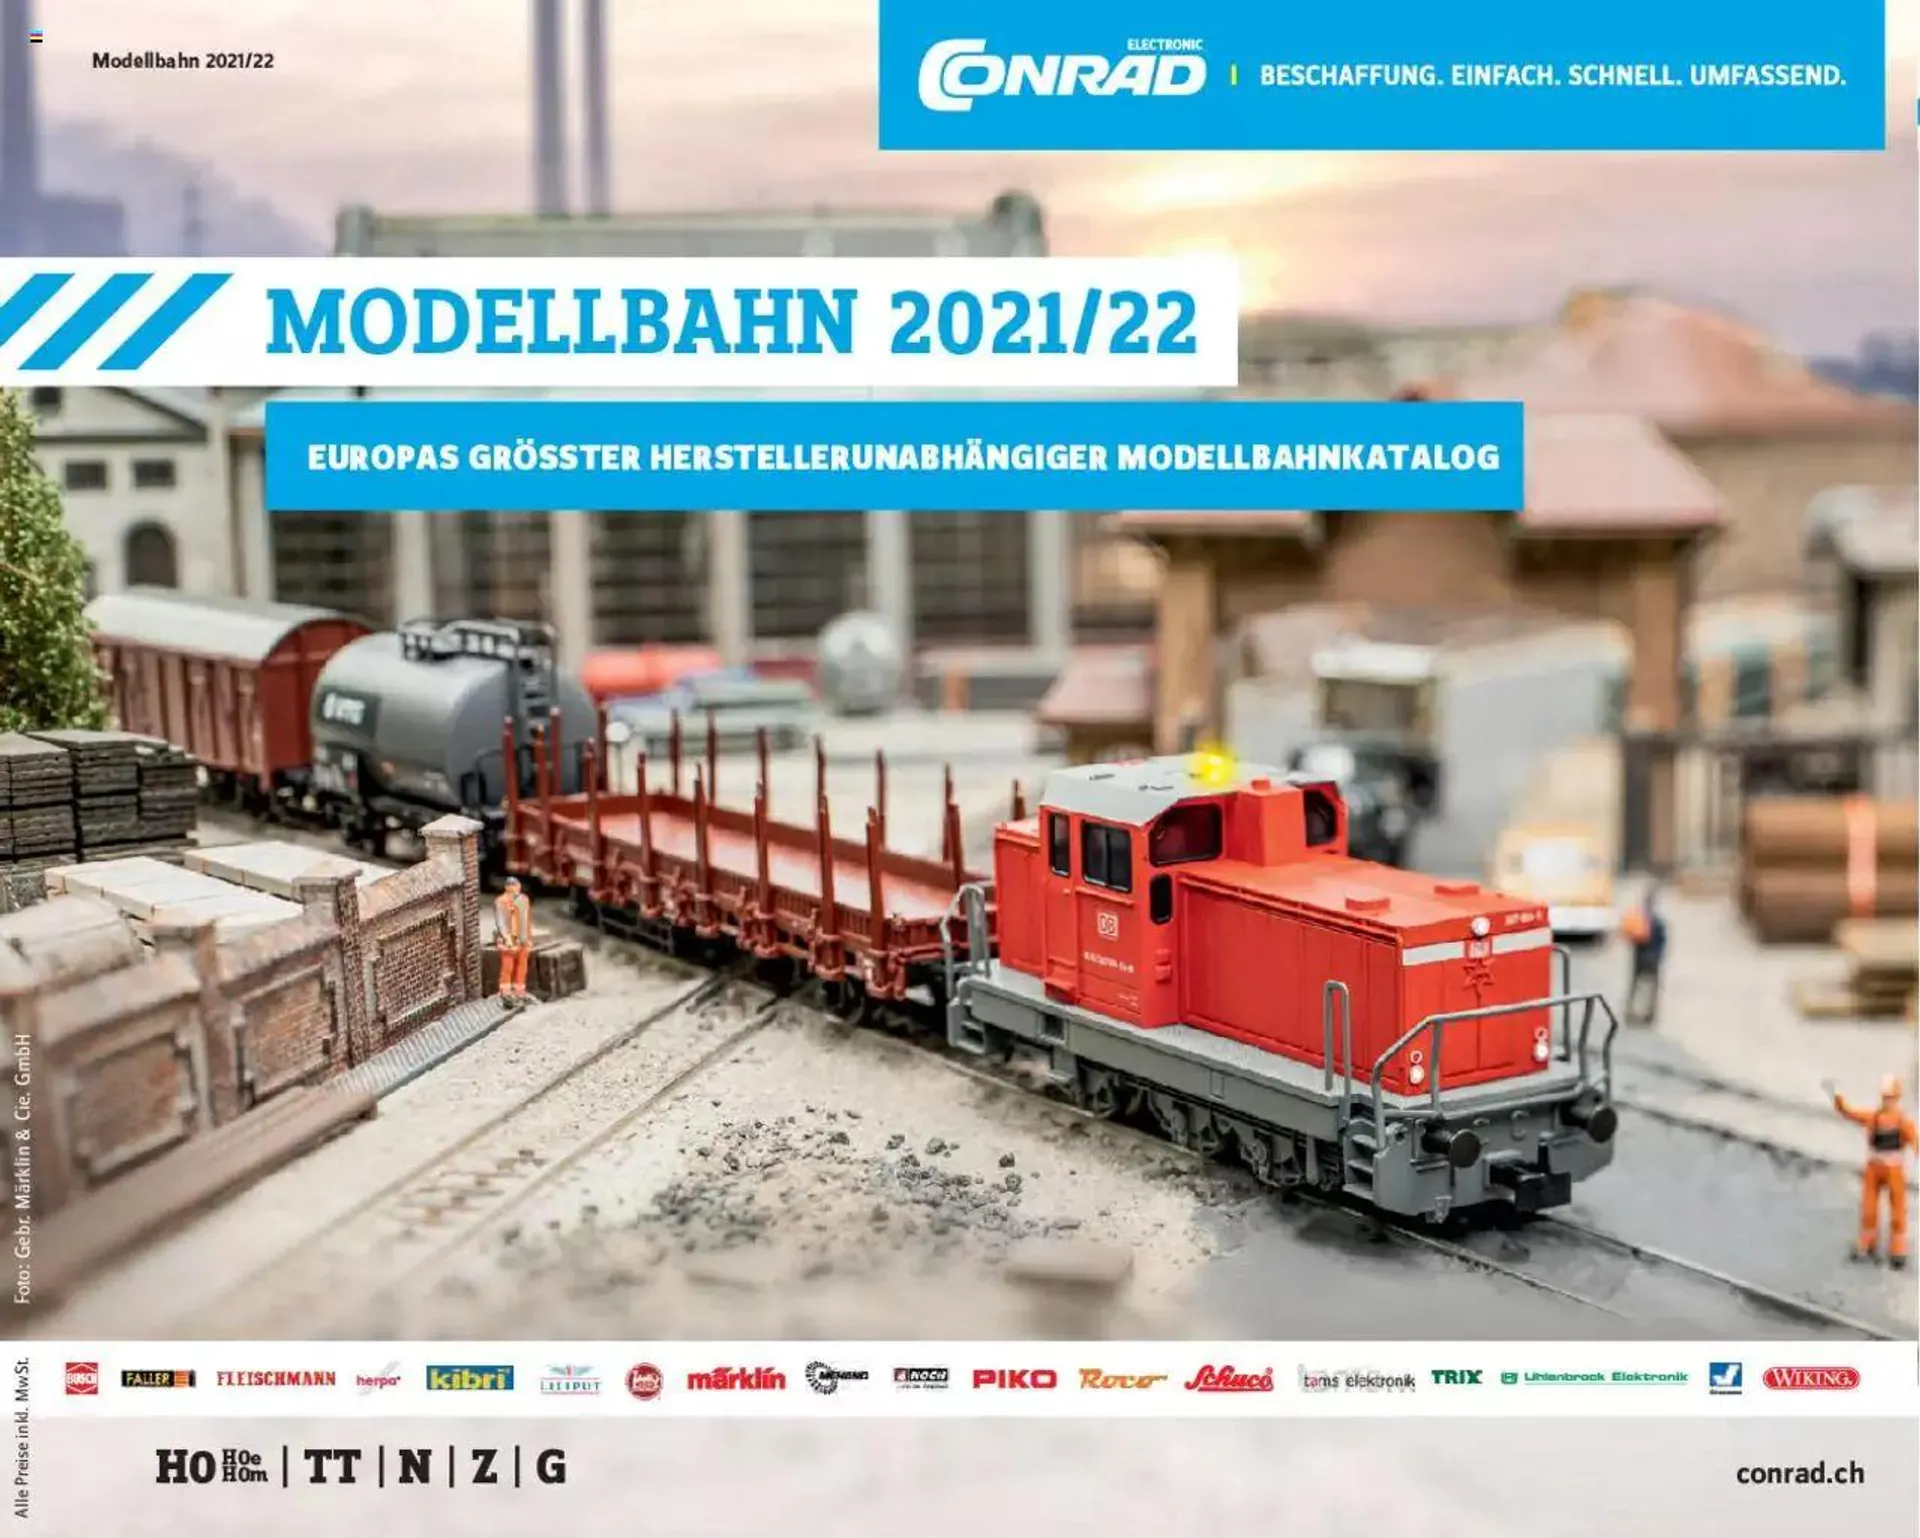 Conrad - Modellbahn 2021/22 - 0